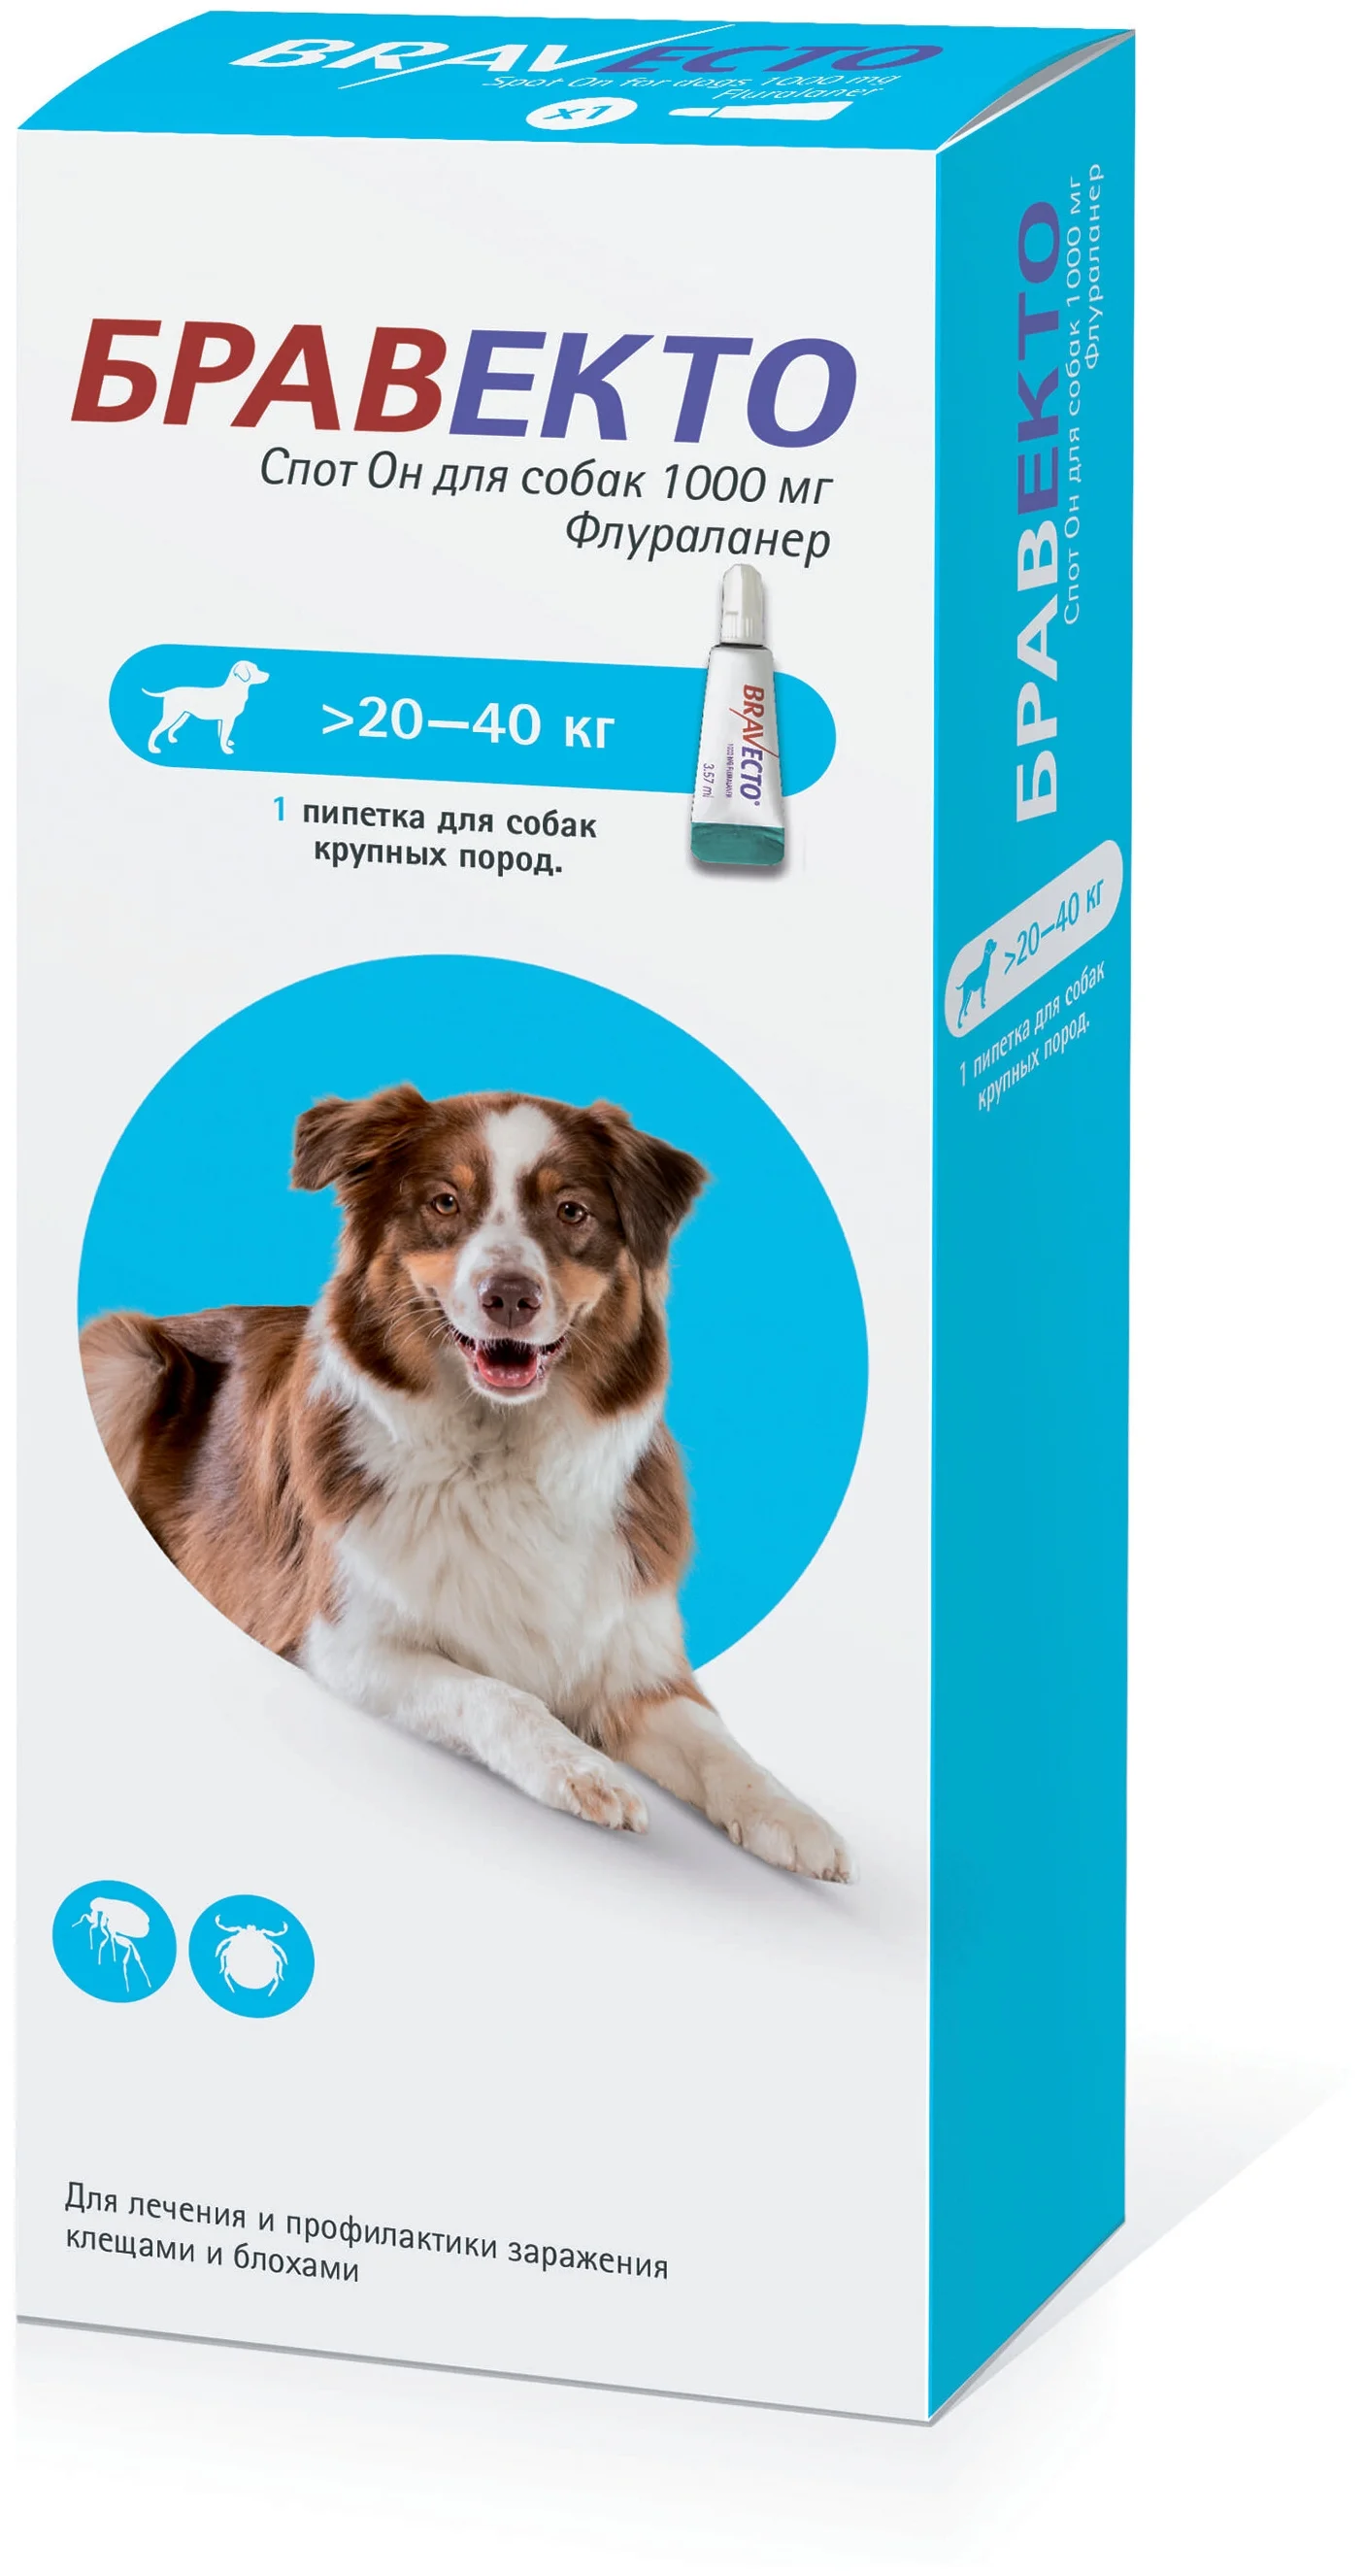 Бравекто (MSD Animal Health) Спот Он для собак 20-40 кг - возраст животного от 11 недель